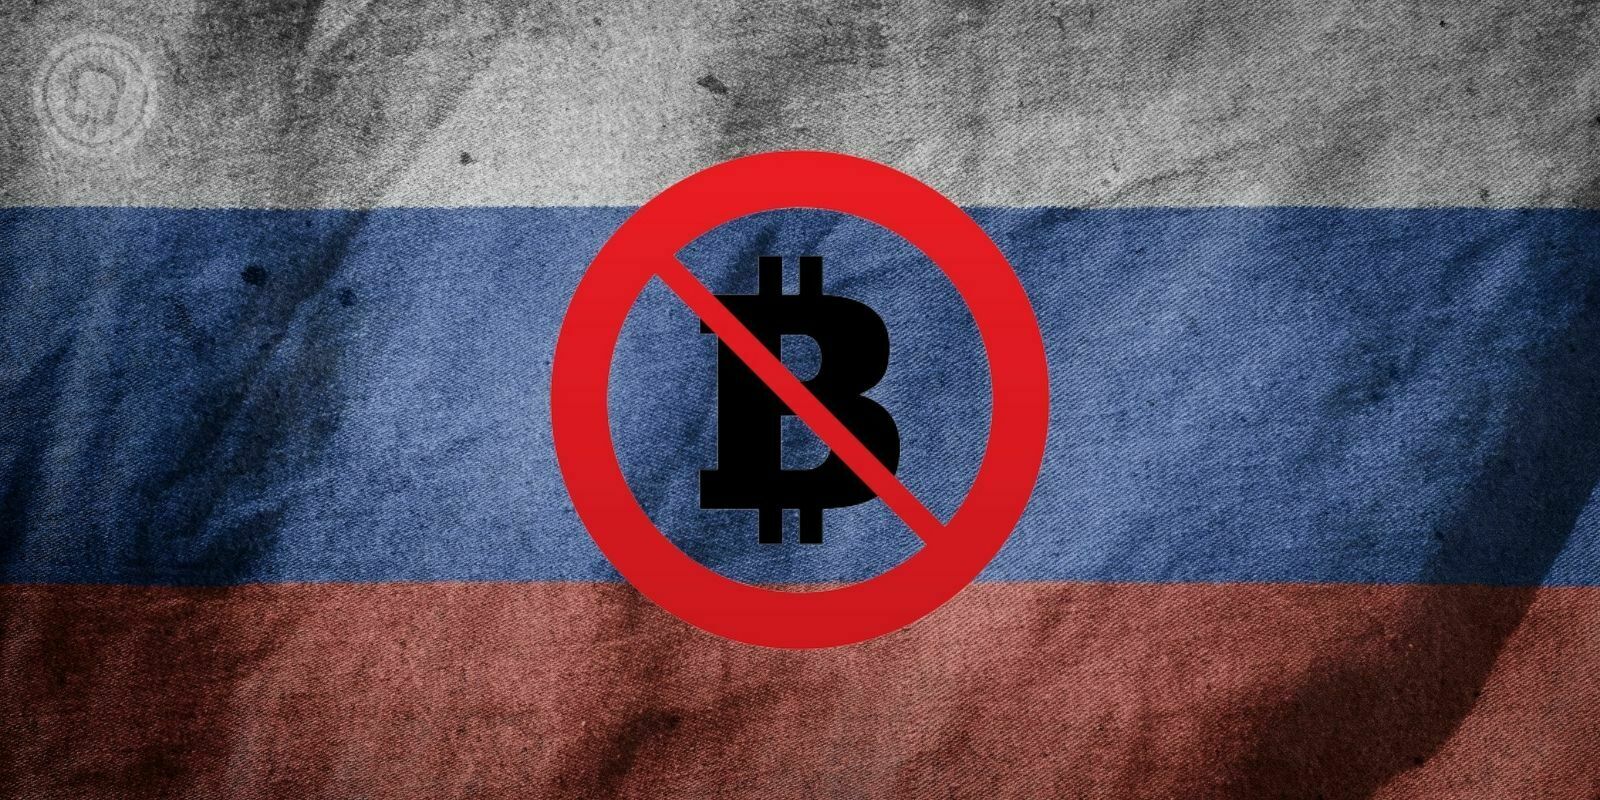 La Russie ne pourra pas contourner les sanctions avec les cryptomonnaies, selon des experts